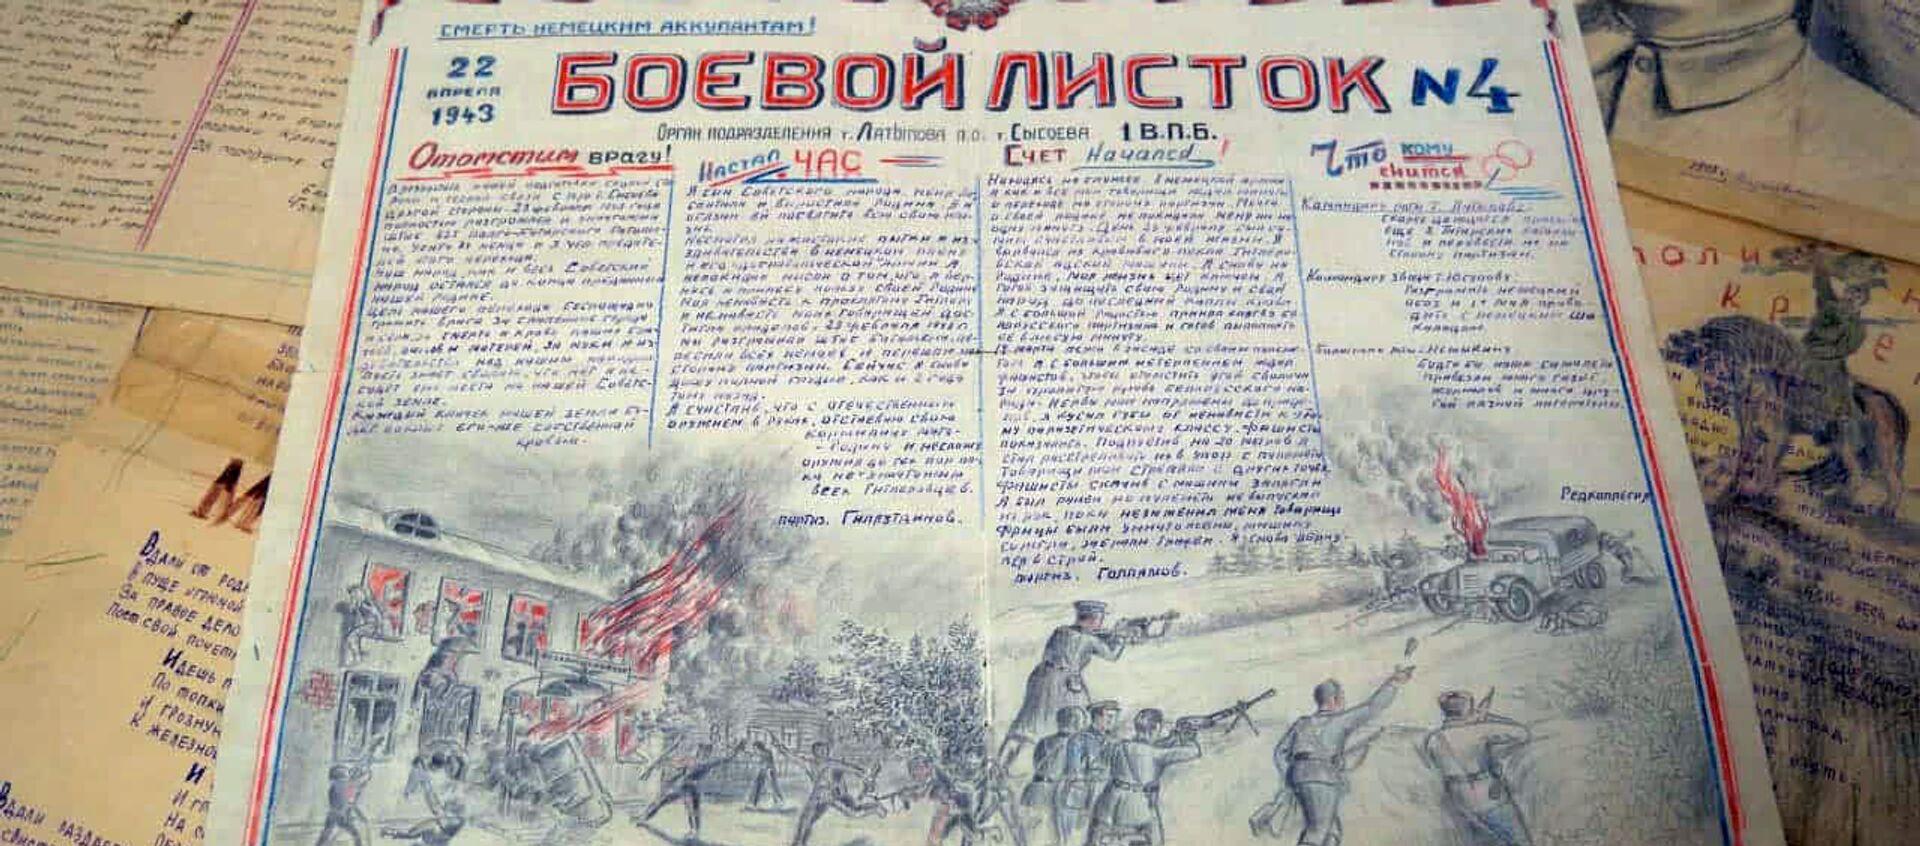 В рядах народных мстителей сражались партизаны со всех стран СНГ - видео - Sputnik Беларусь, 1920, 21.06.2021